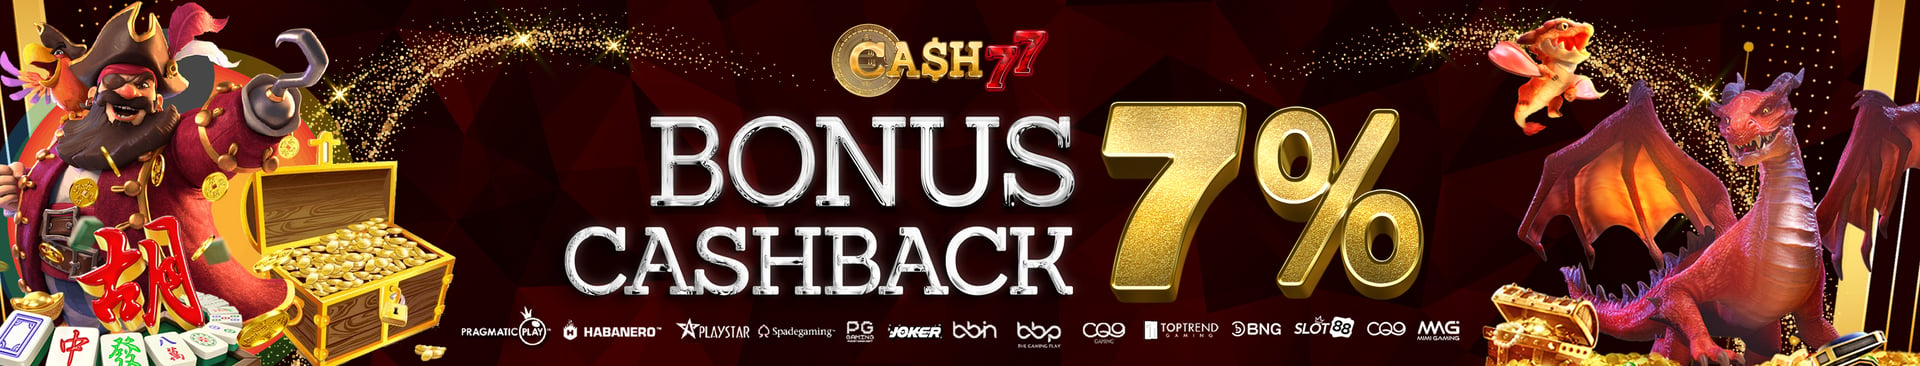 Bonus Cashback